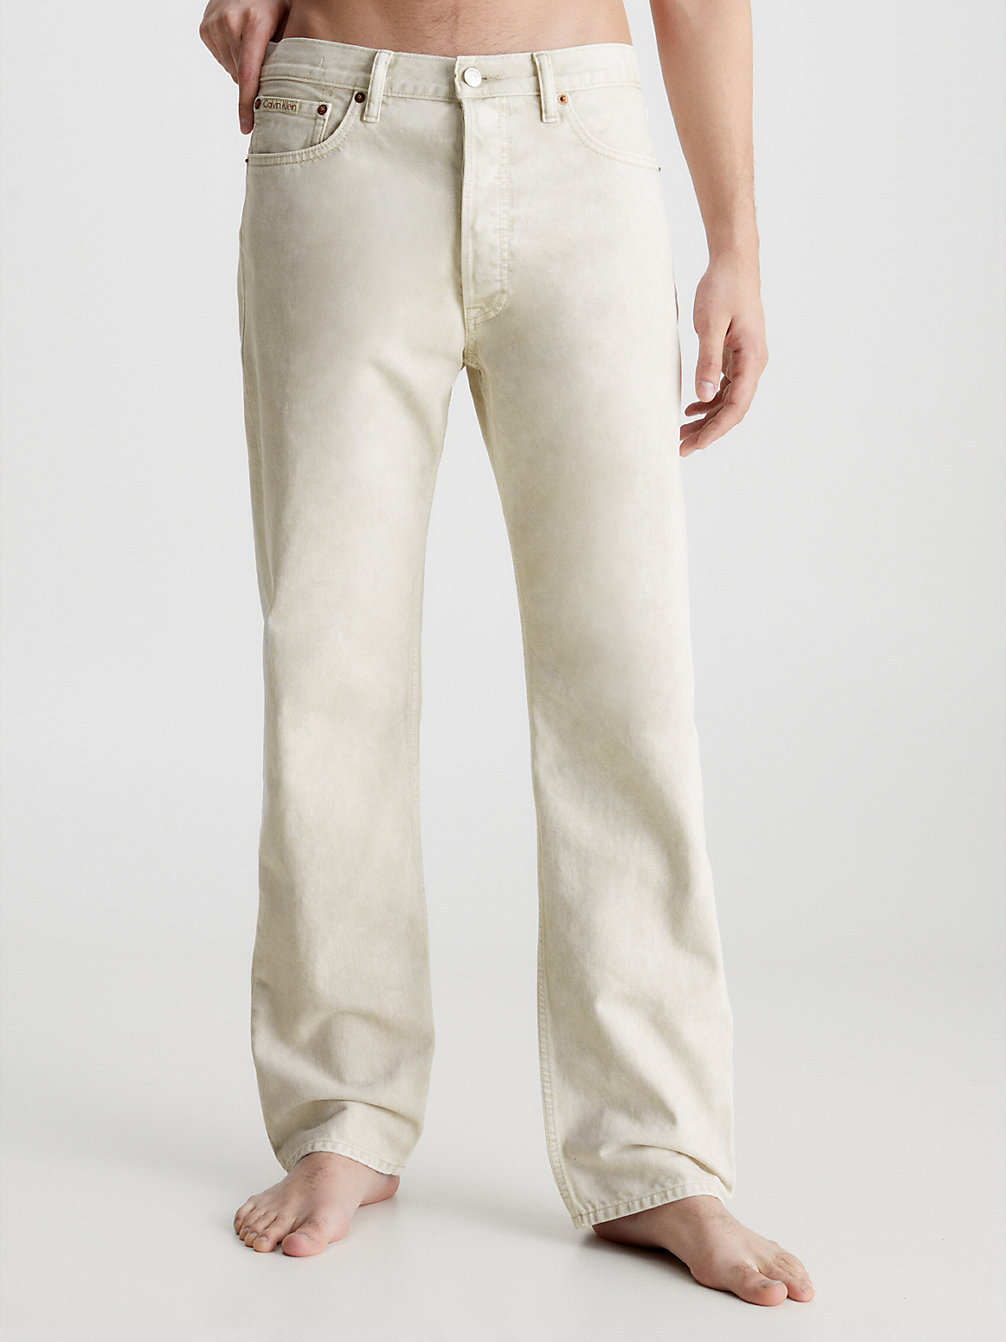 WHITE Unisex Straight Jeans - CK Standards undefined Herren Calvin Klein